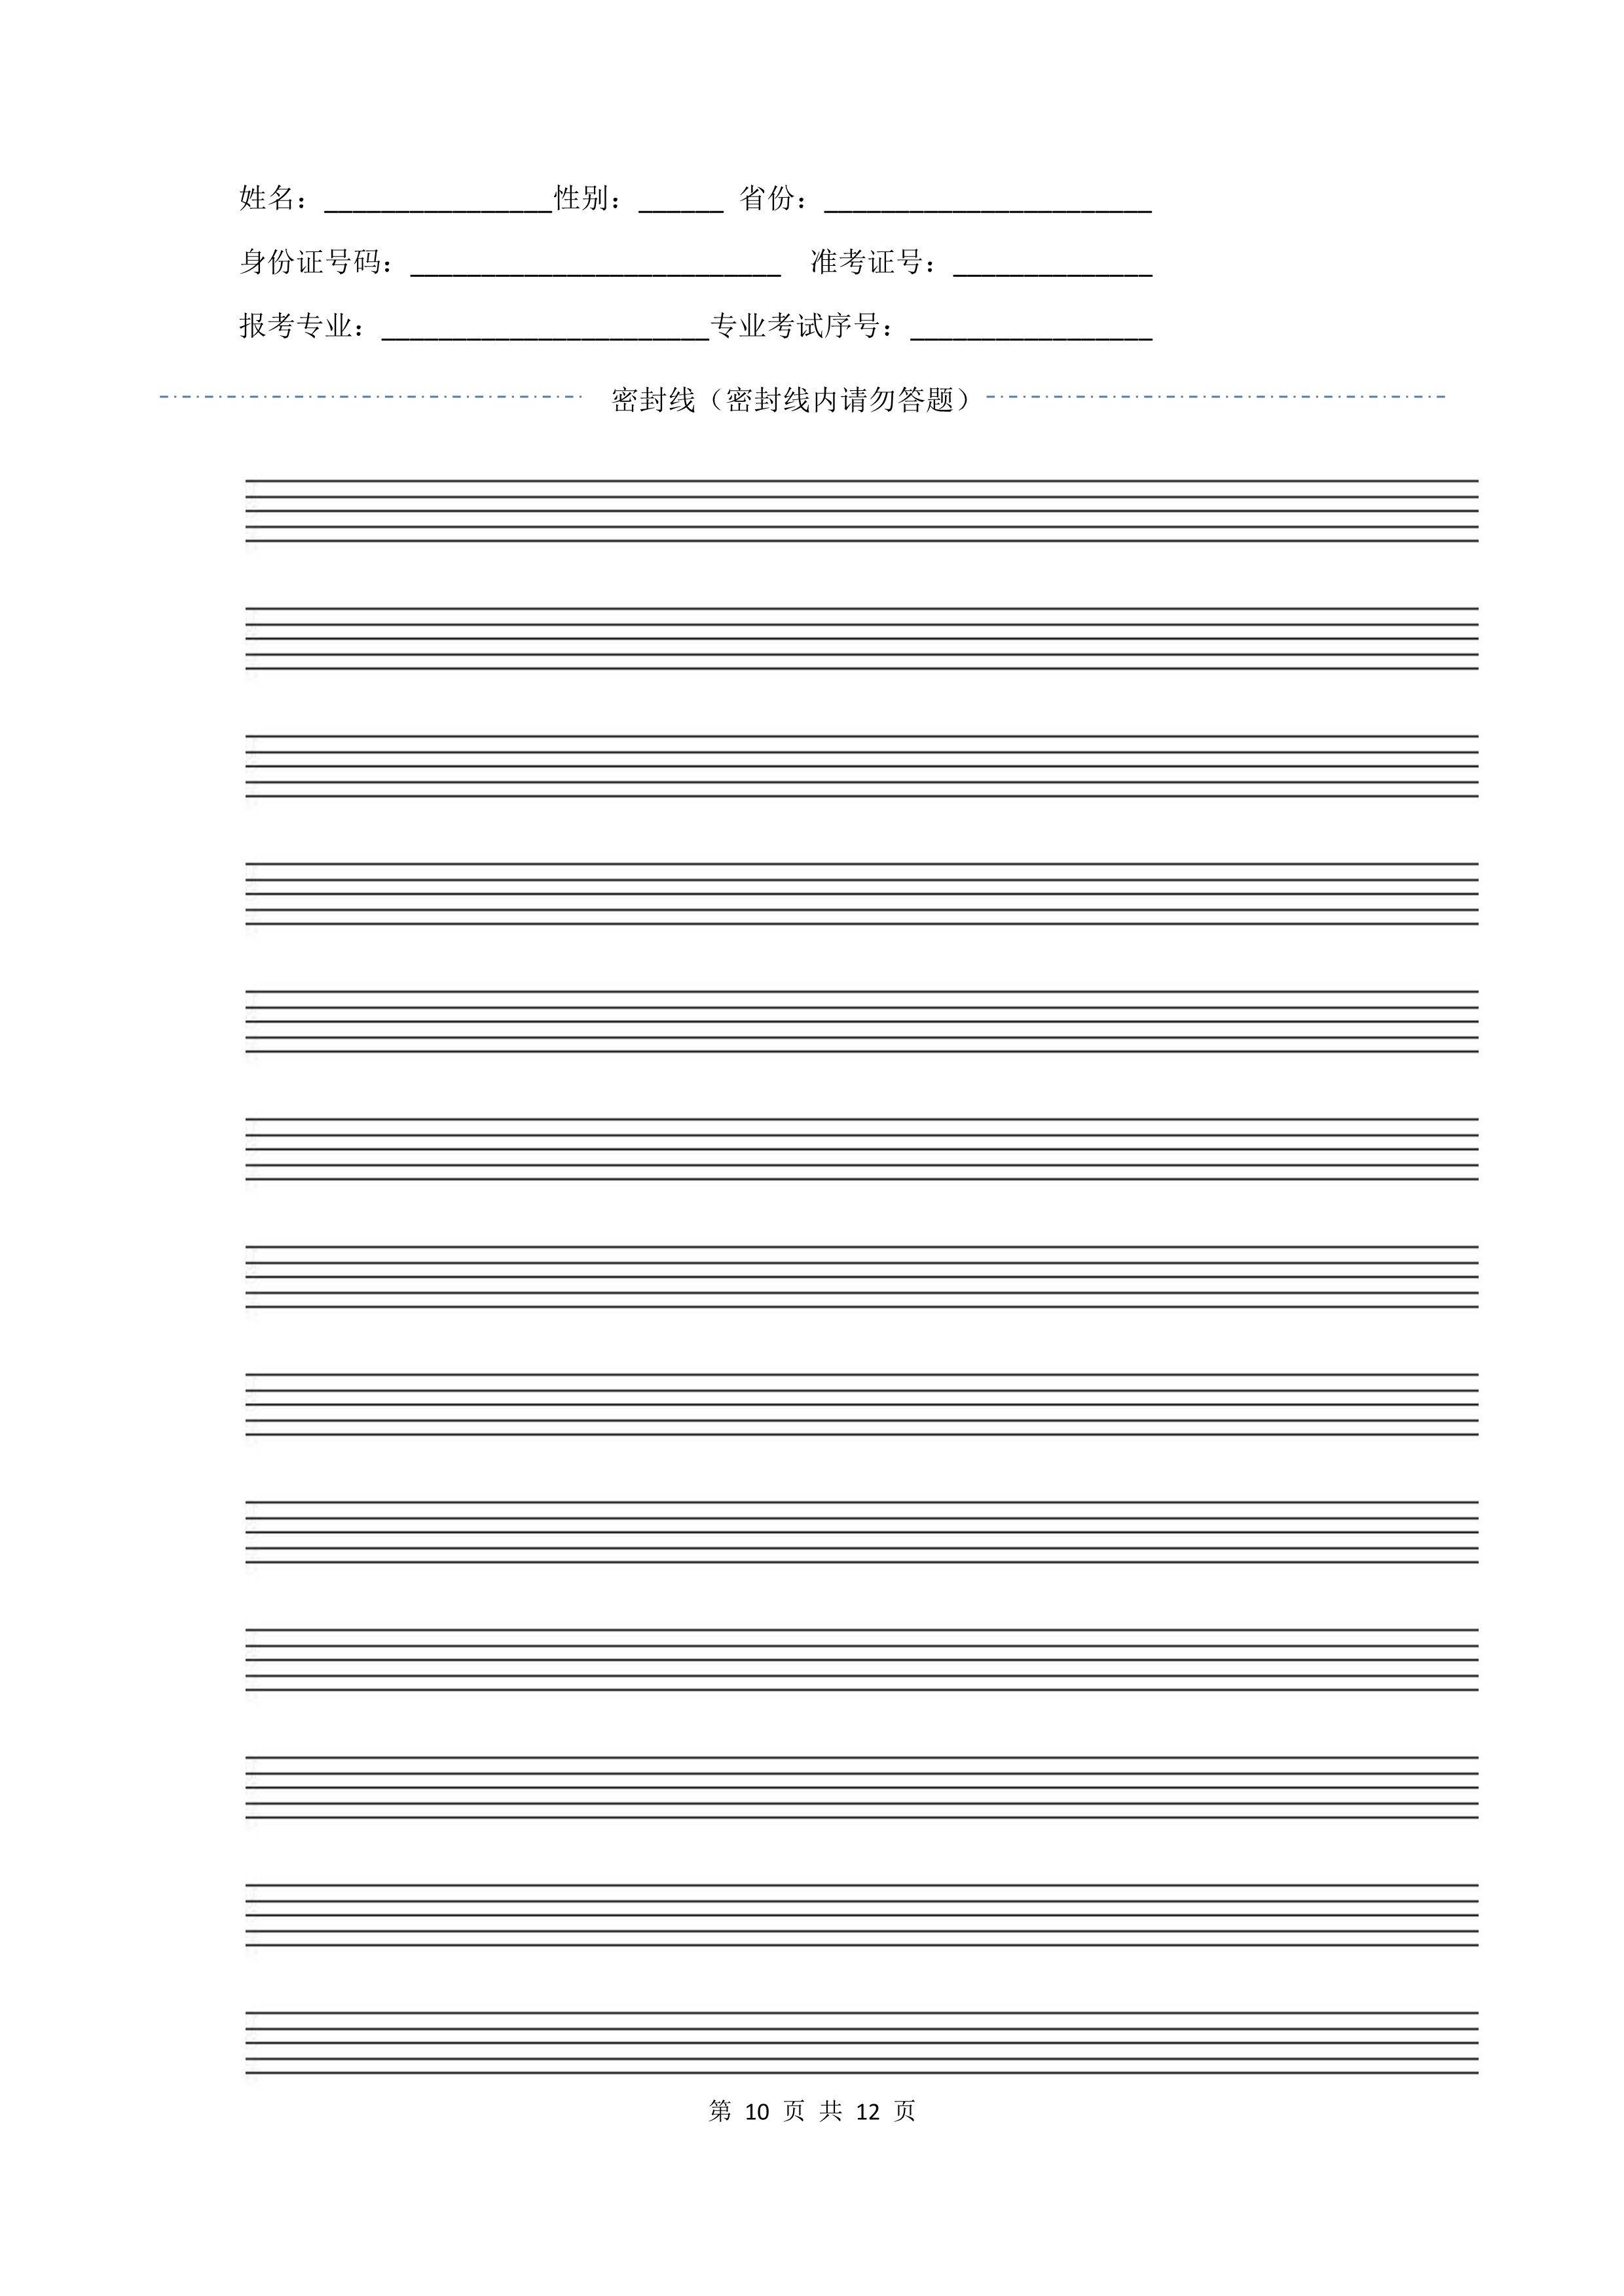 南京艺术学院2022年本科招生作曲与作曲技术理论、作曲与作曲技术理论（计算机作曲）专业《器乐曲写作》科目考试答题纸及草稿纸_10 - 副本.jpg